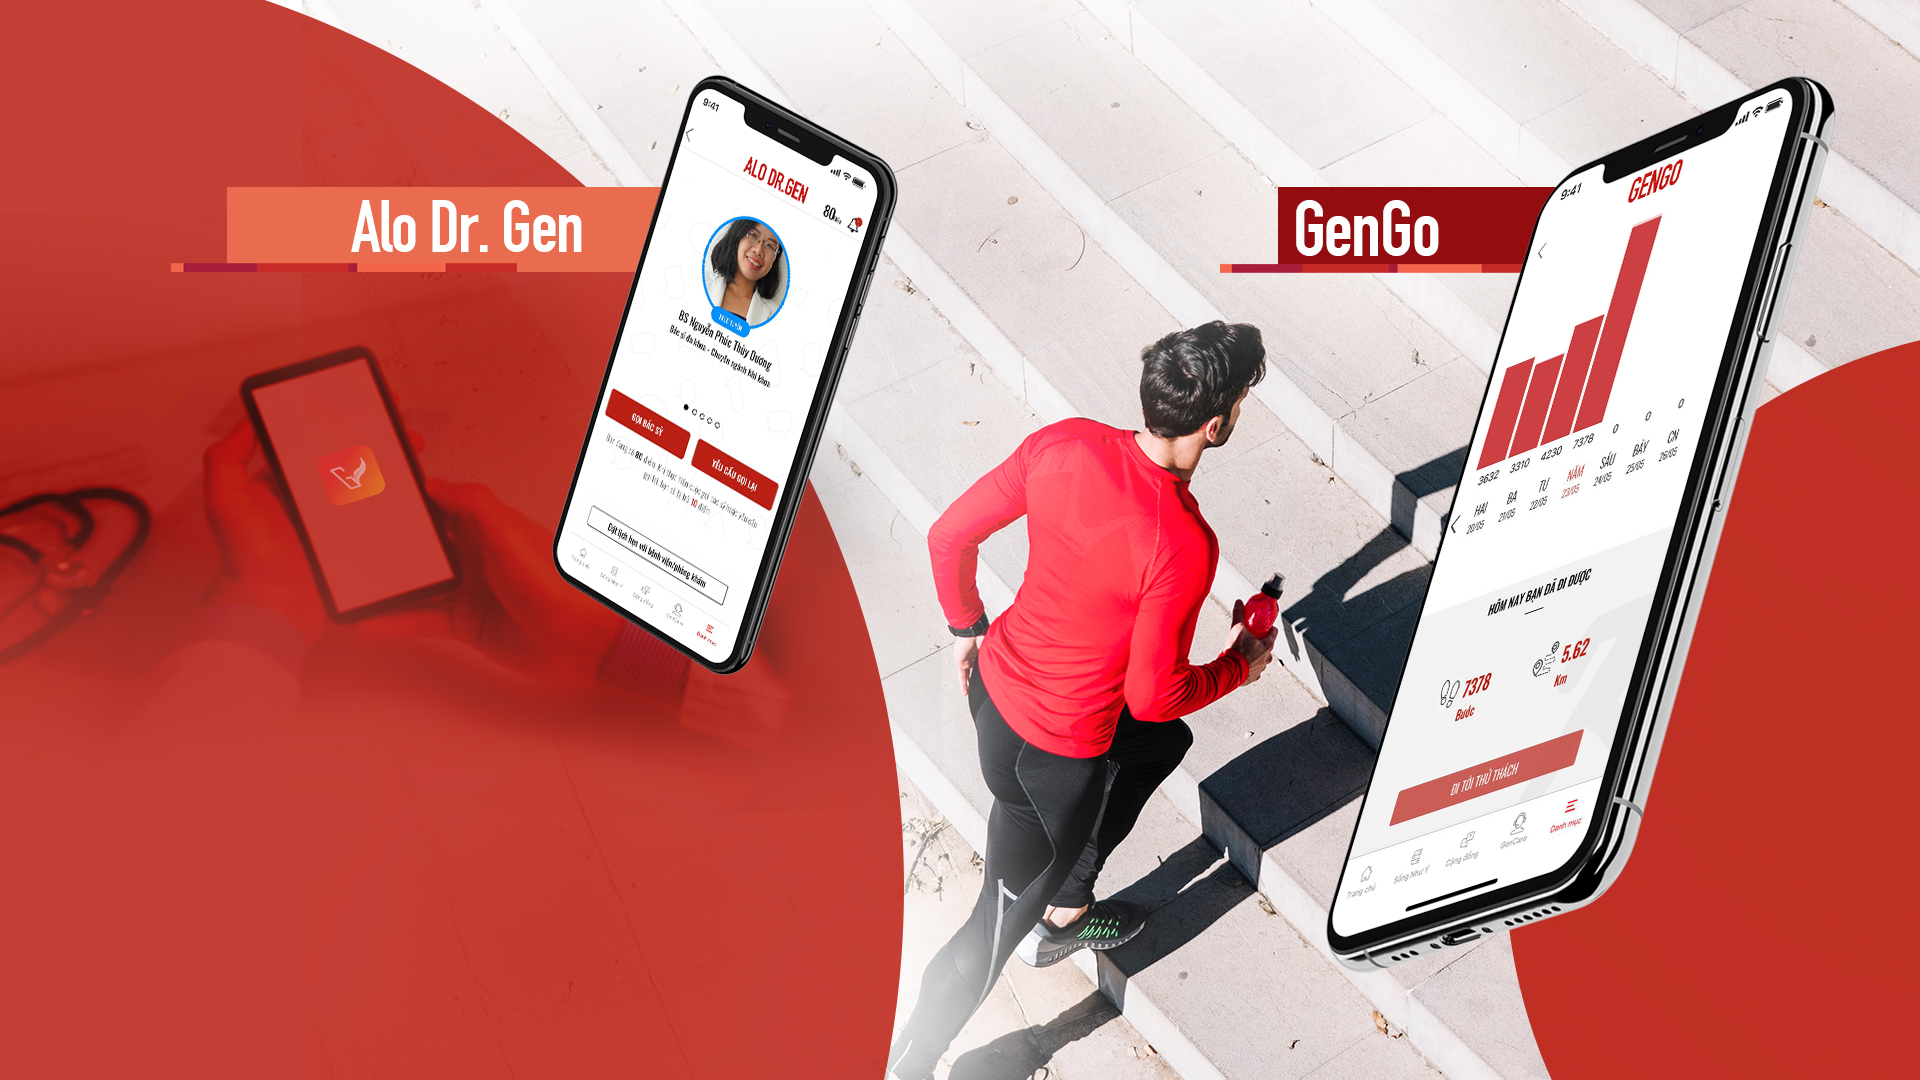 GenVita ra mắt 2 tính năng mới: GenGo và Alo Dr. Gen